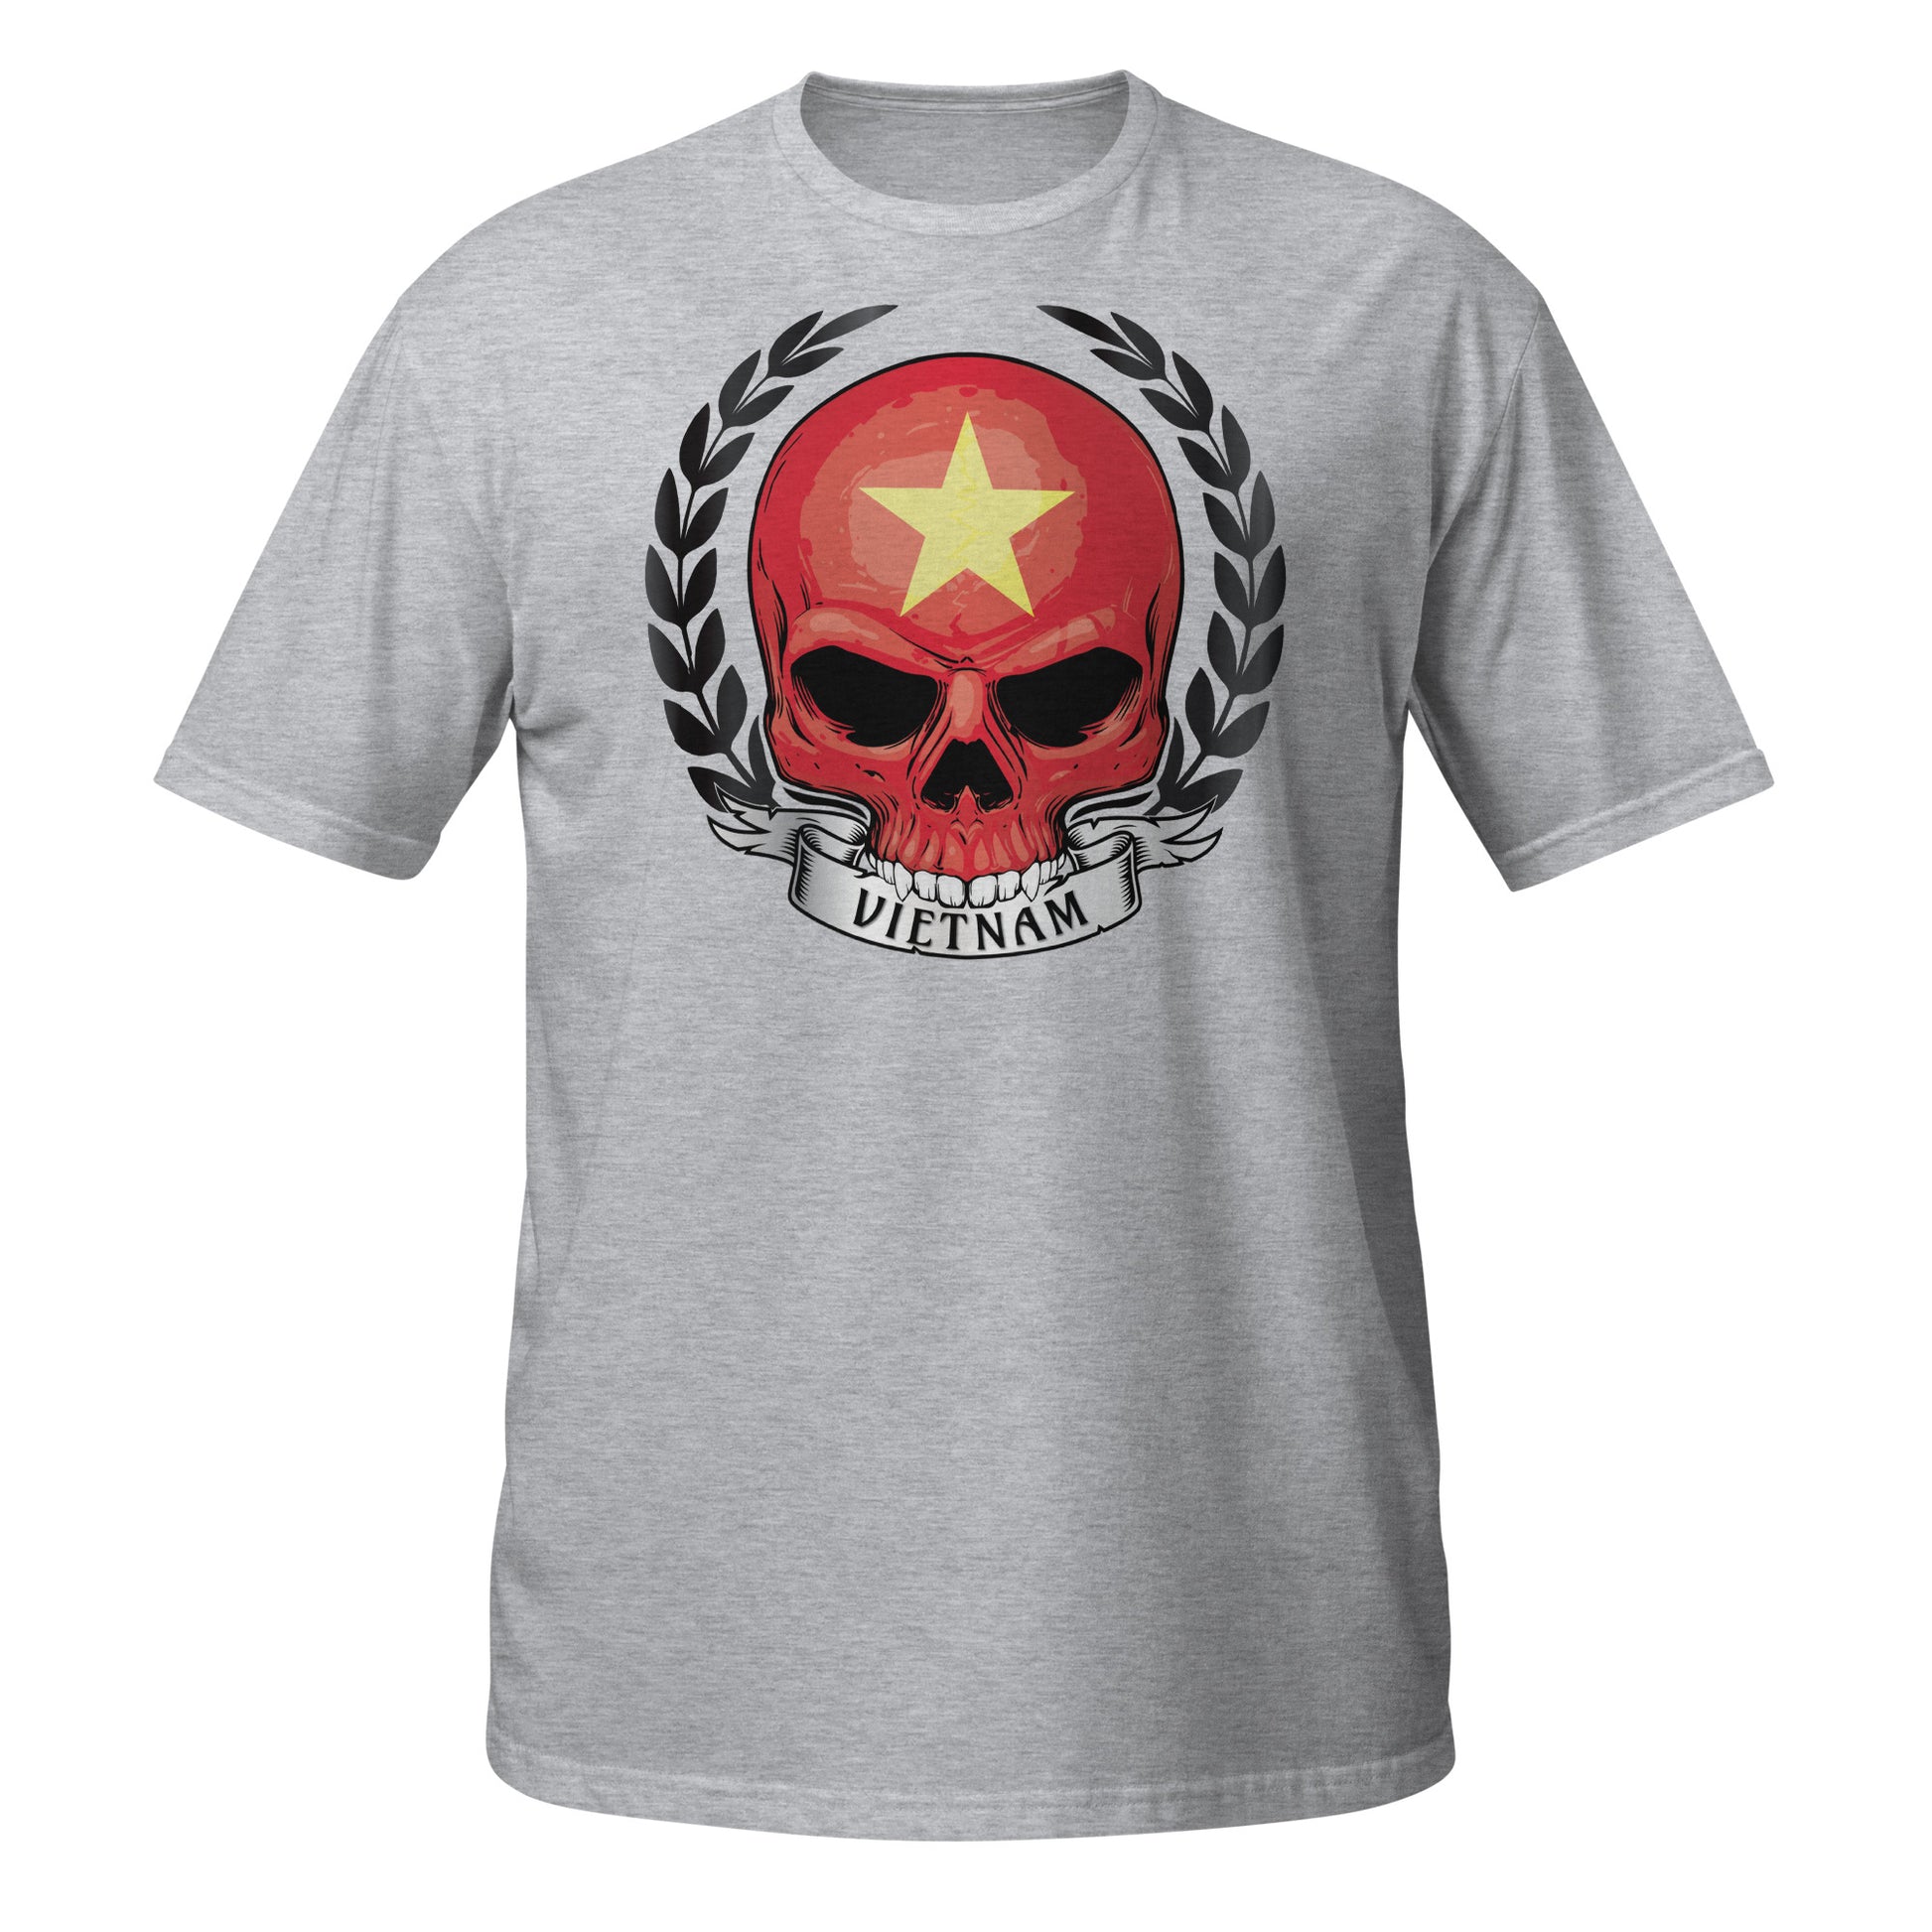 Skull Shirt For Vietnam Lover / Honor Vietnam T-shirt grey Color